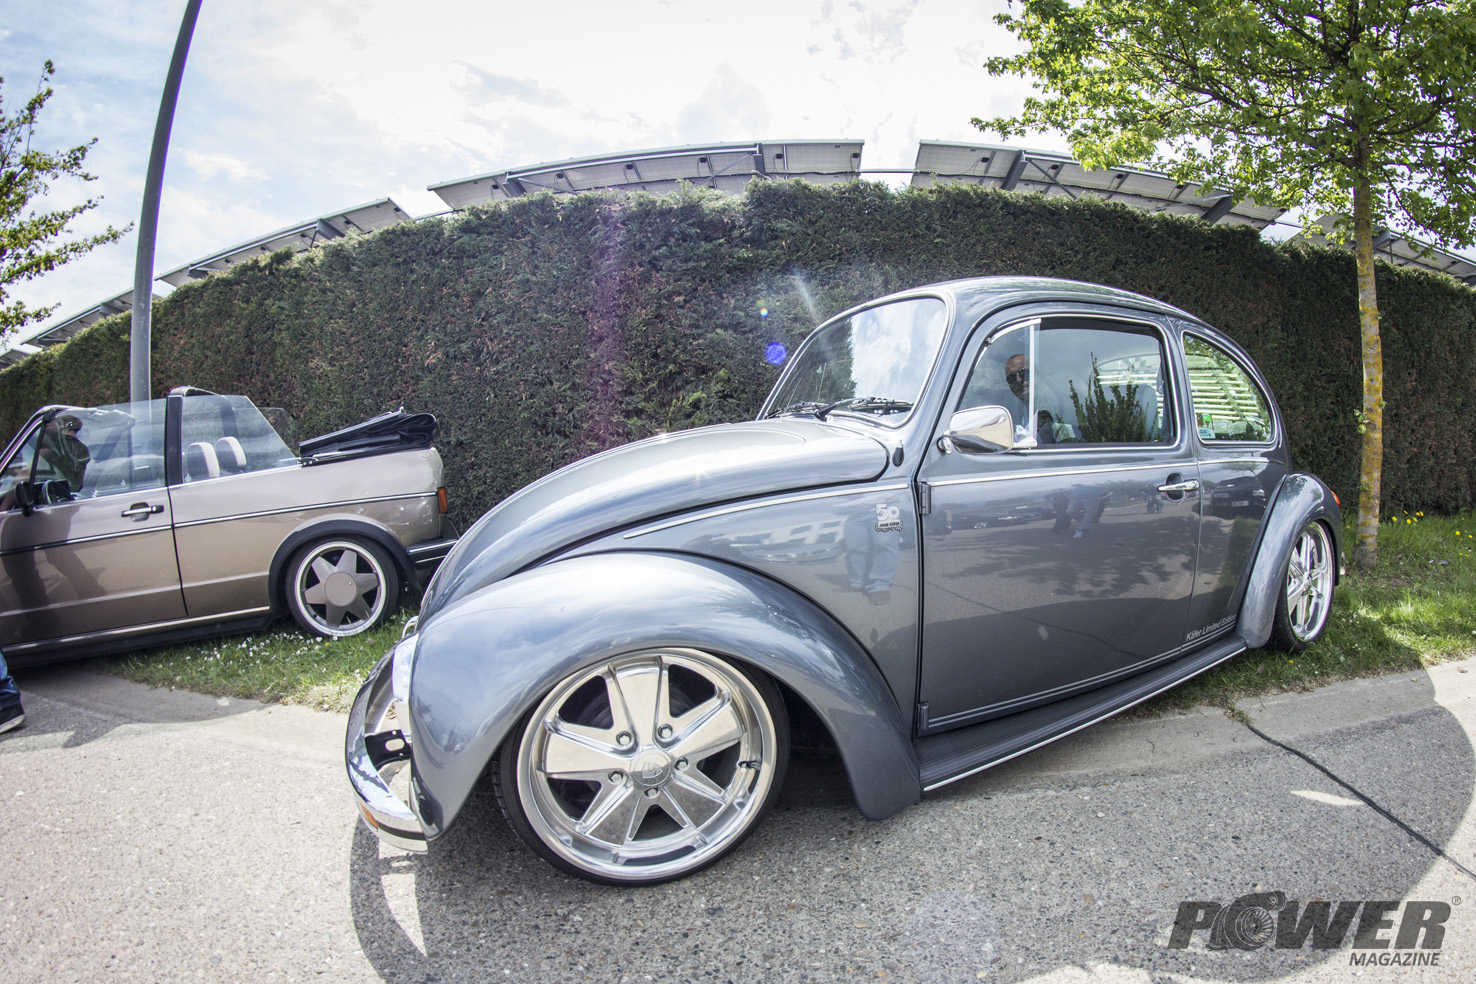 VW Beetle tuning